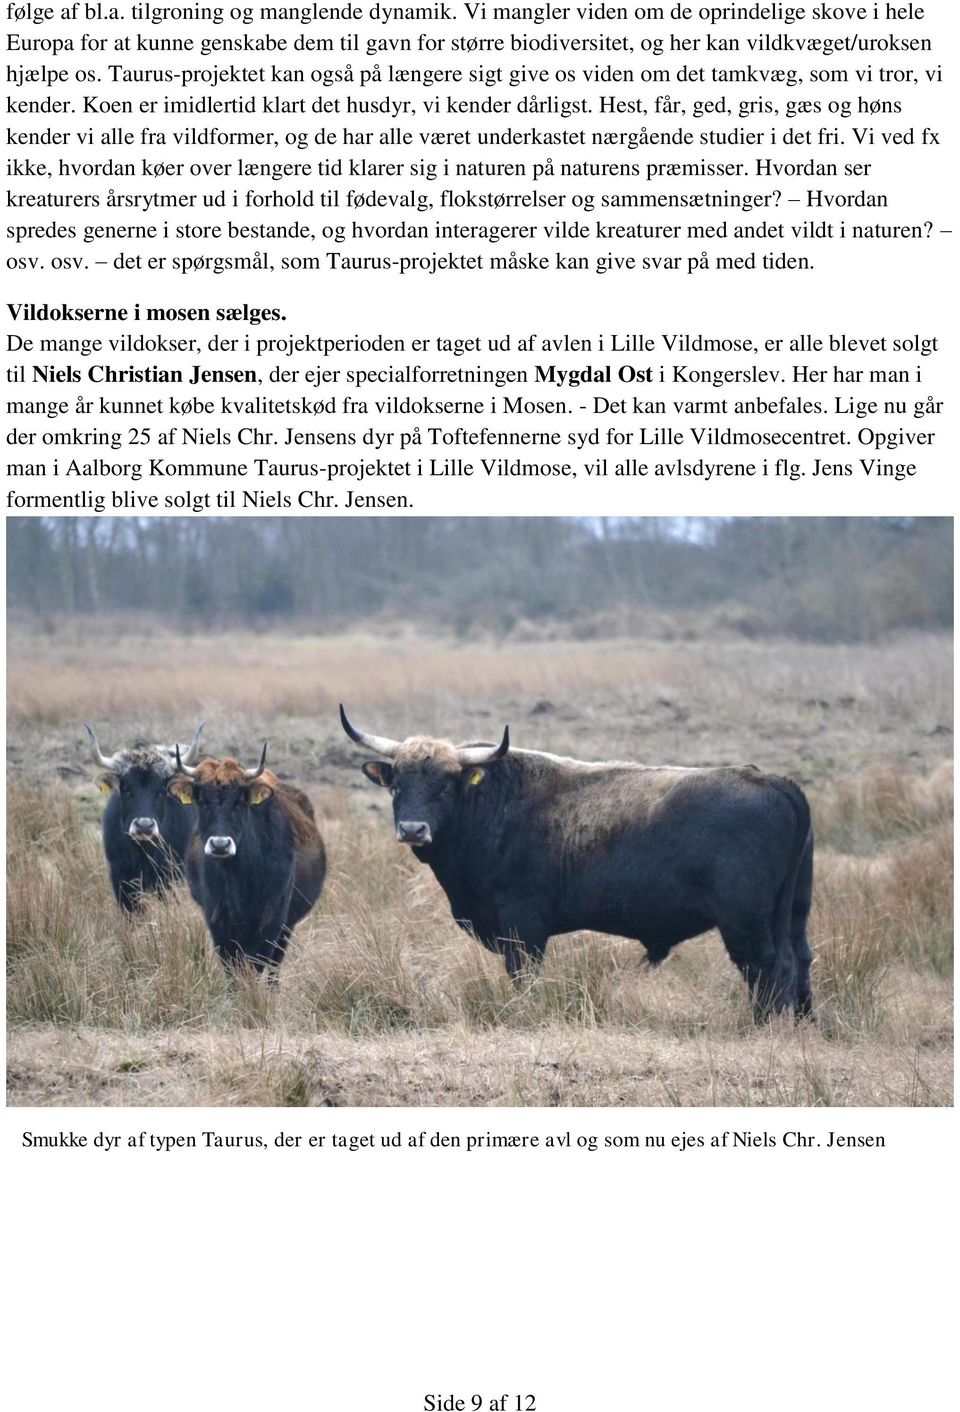 Taurus-projektet kan også på længere sigt give os viden om det tamkvæg, som vi tror, vi kender. Koen er imidlertid klart det husdyr, vi kender dårligst.